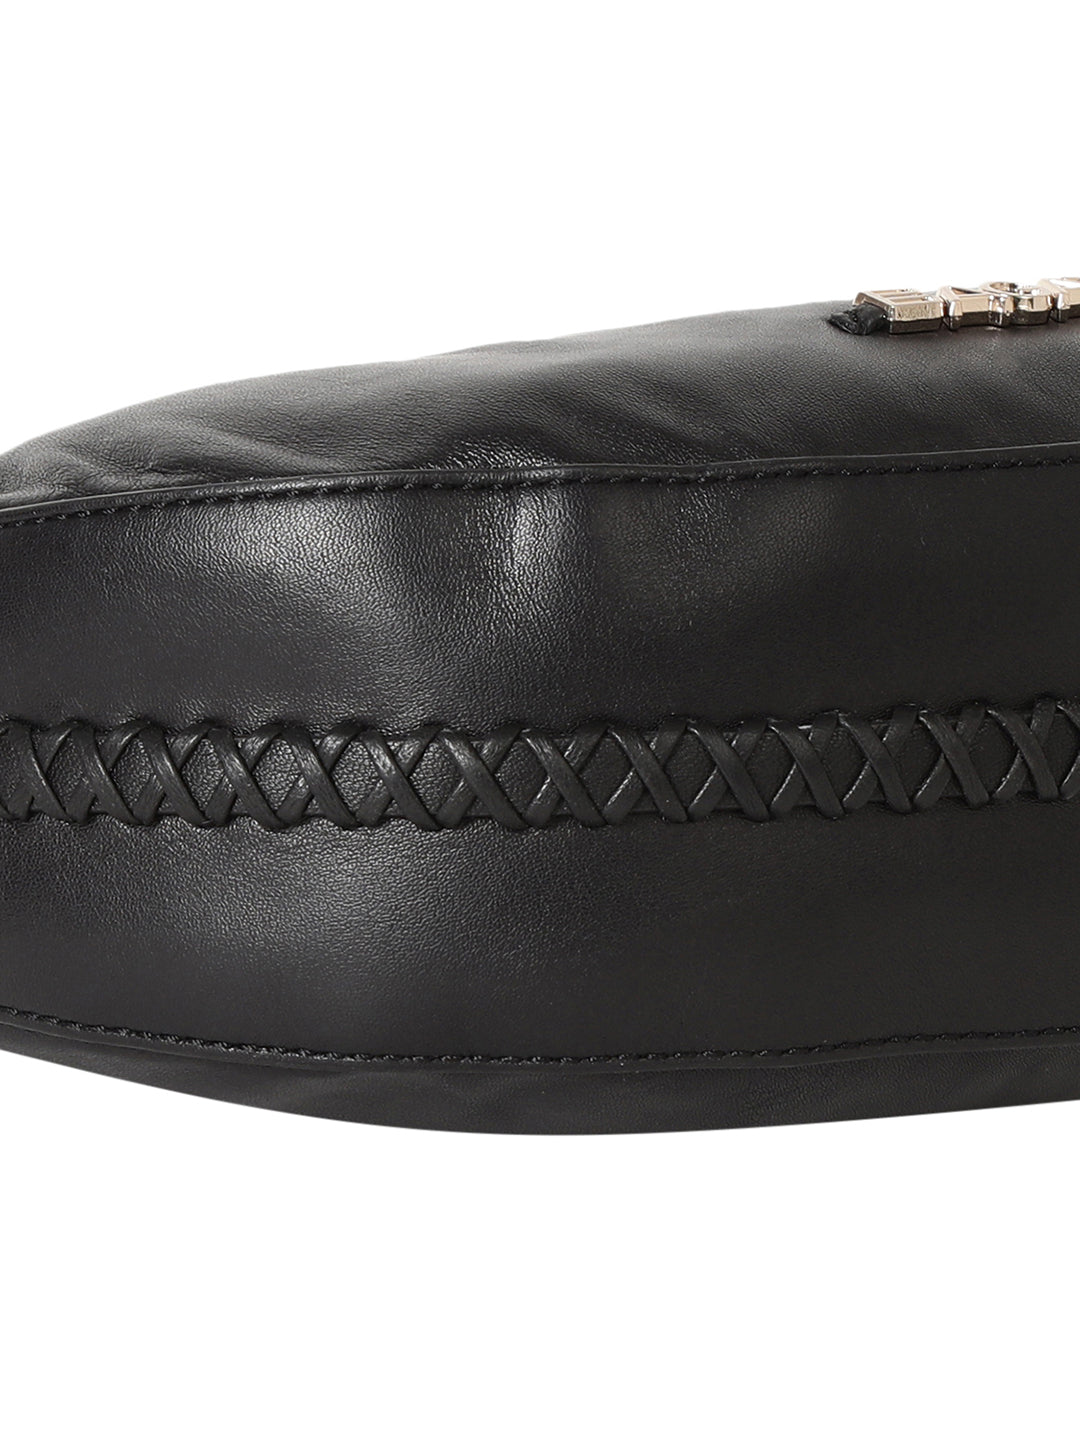 Bretna Black Leather Weaved Shoulder Bag